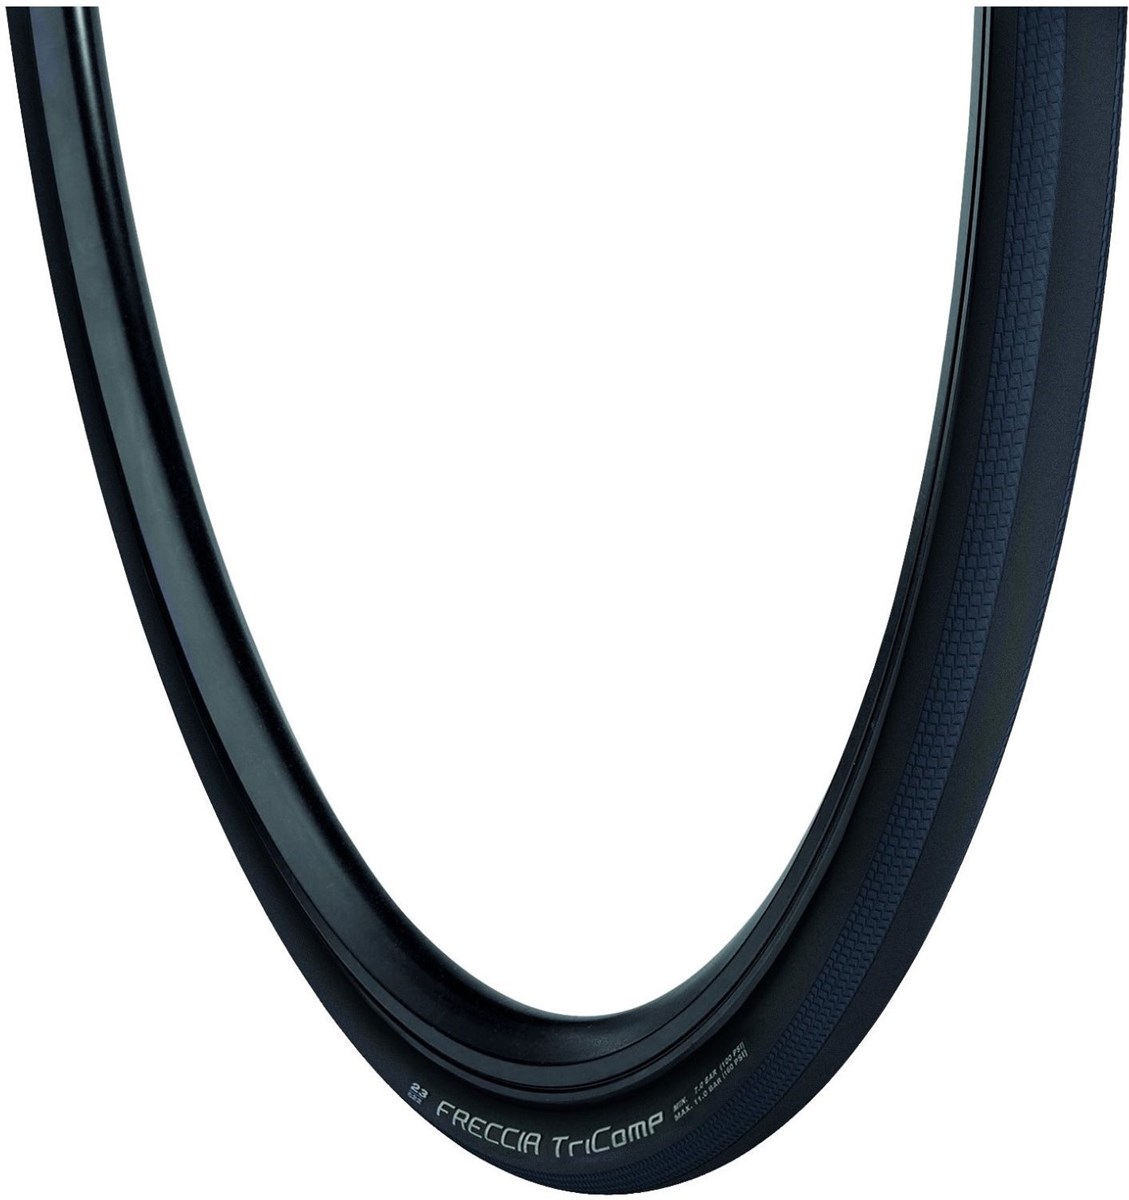 Vredestein Freccia 700c Folding Road Tyre